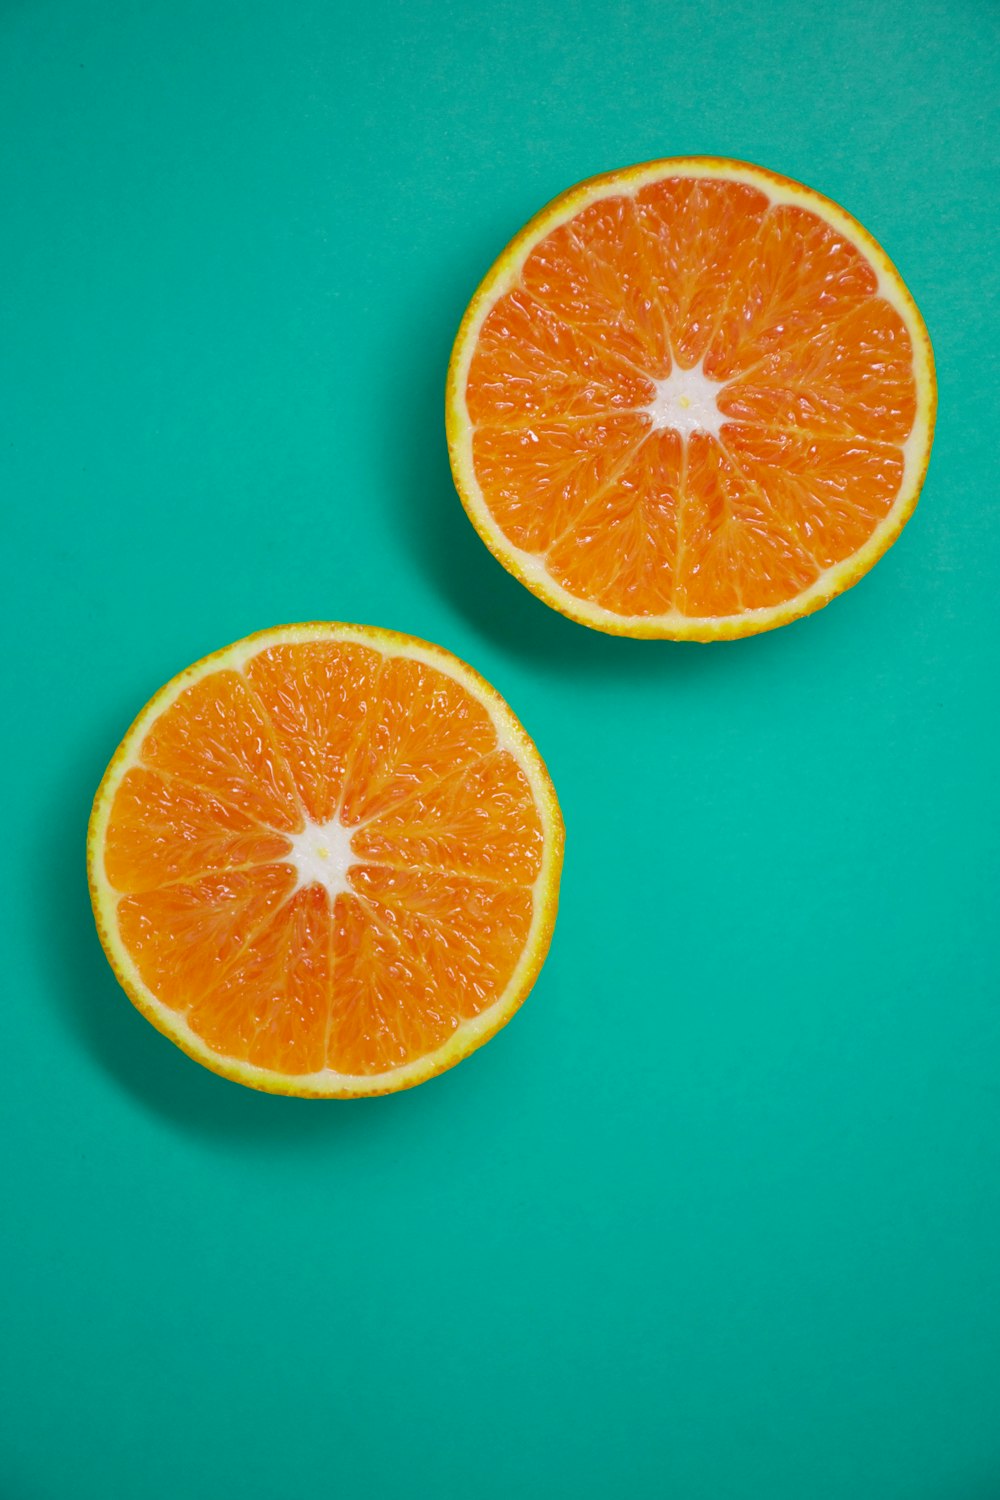 Quả cam là một loại trái cây rất ngon và giàu vitamin C. Vỏ cam có màu sắc tươi sáng và bên trong là múi ngọt mịn, là món ăn giúp cơ thể khỏe mạnh. Xem hình ảnh cam để cảm nhận vẻ đẹp tự nhiên của loại trái cây này.